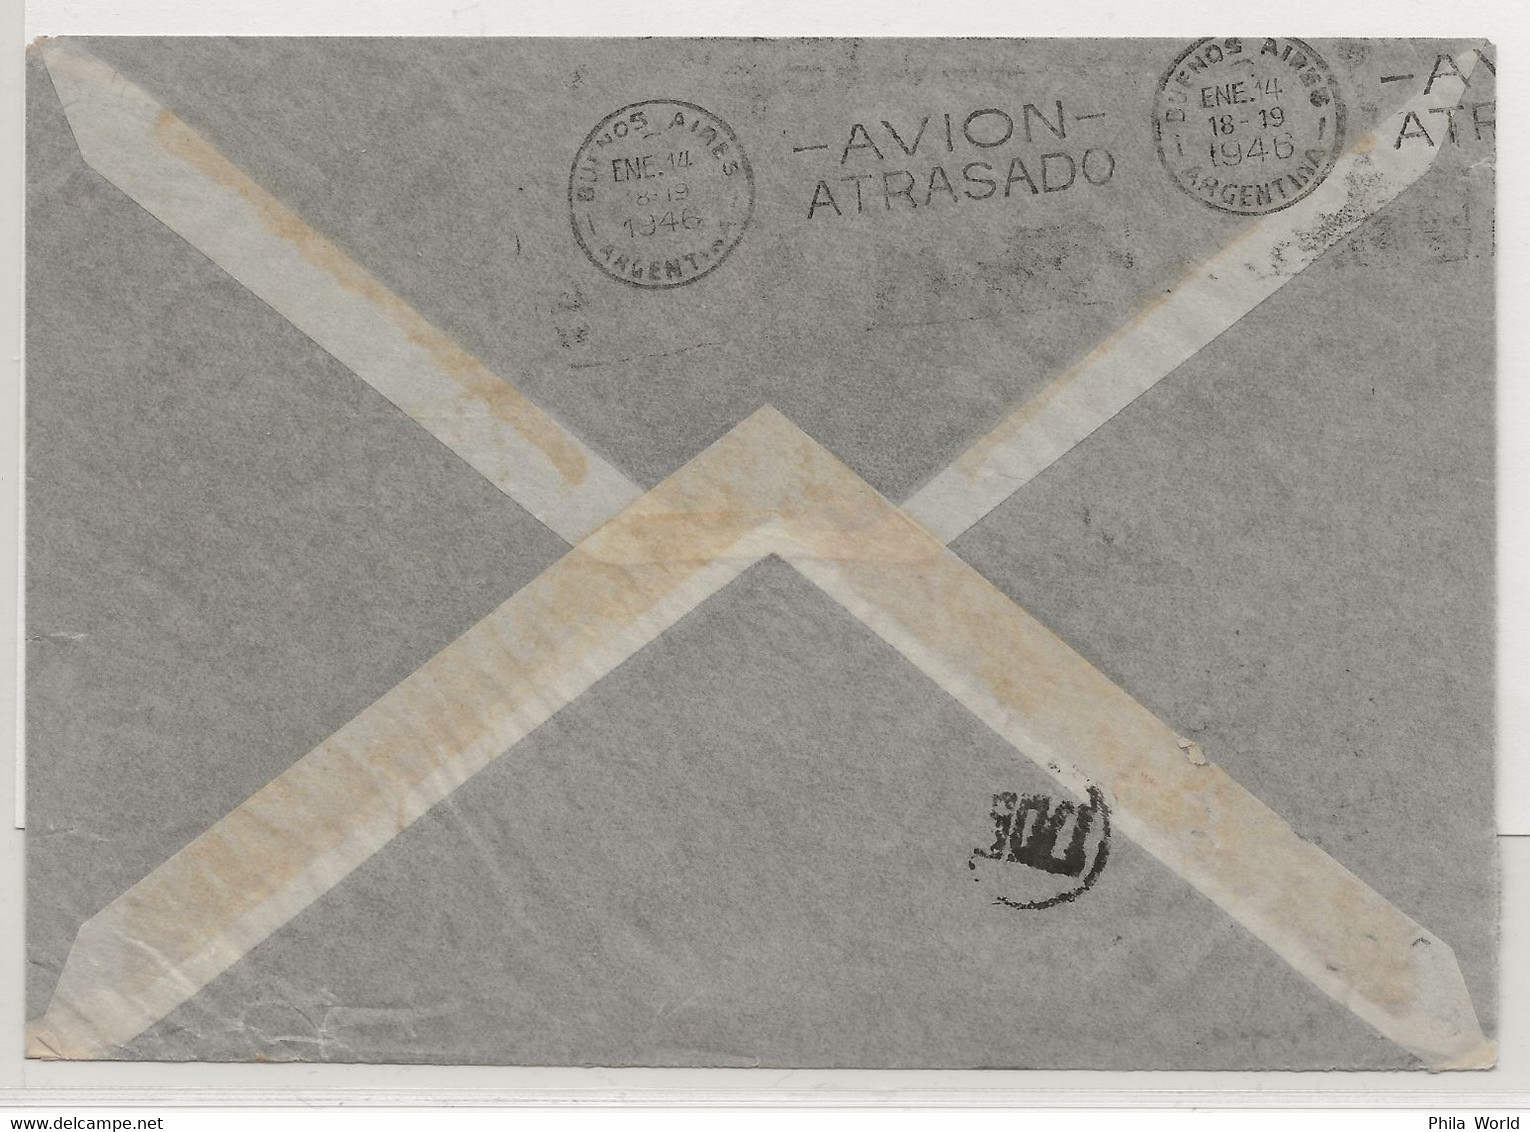 VOL AVION ACCIDENTE - 1946 SUEDE - ARGENTINE Avec Cachet AVION ATRASADO Départ GOTEBORG Air Mail Crash Cover - Covers & Documents